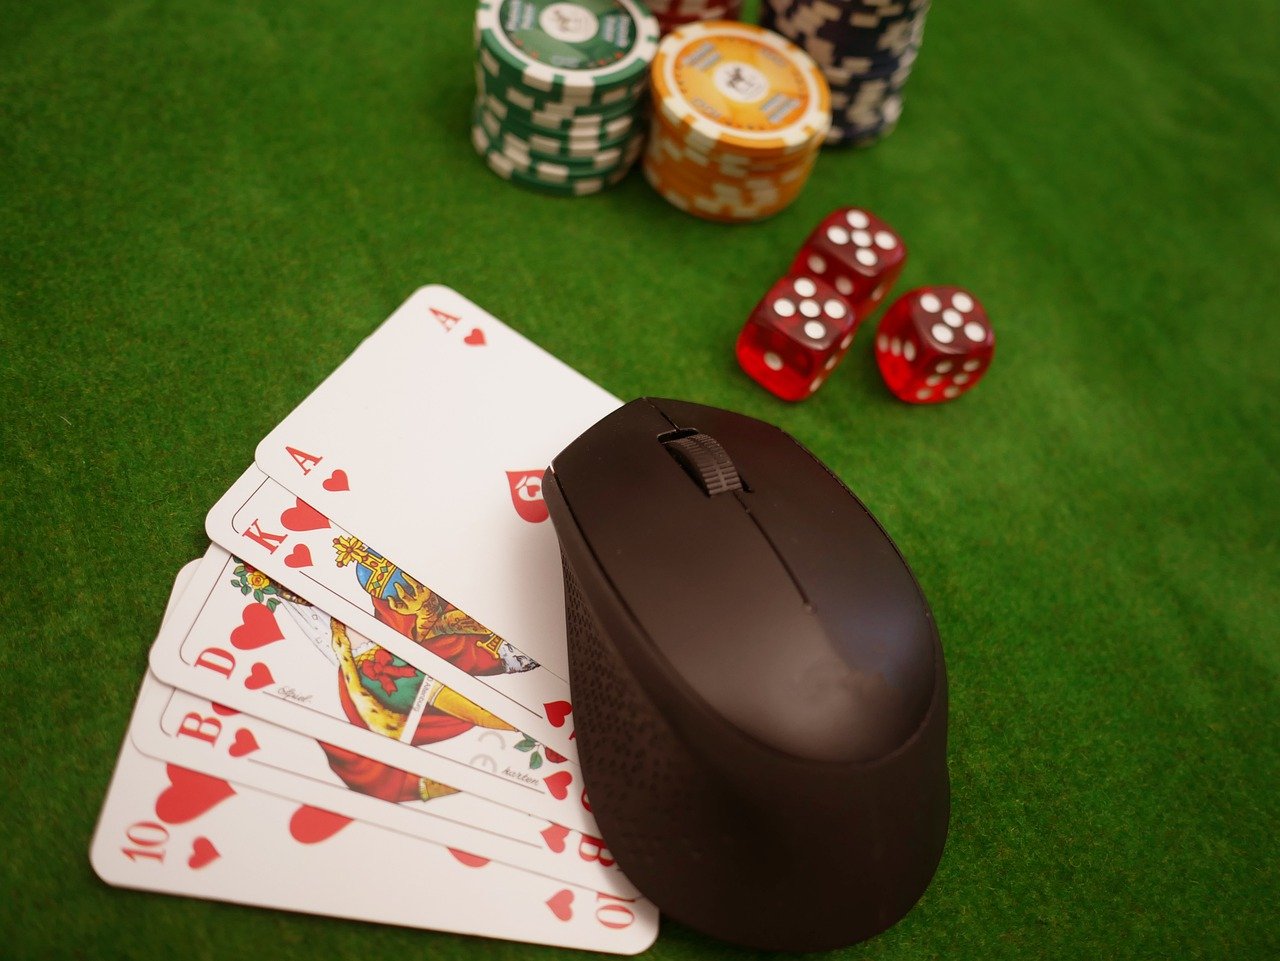 mejores casinos online peru en OnlineCasinoProfy Con fines de lucro